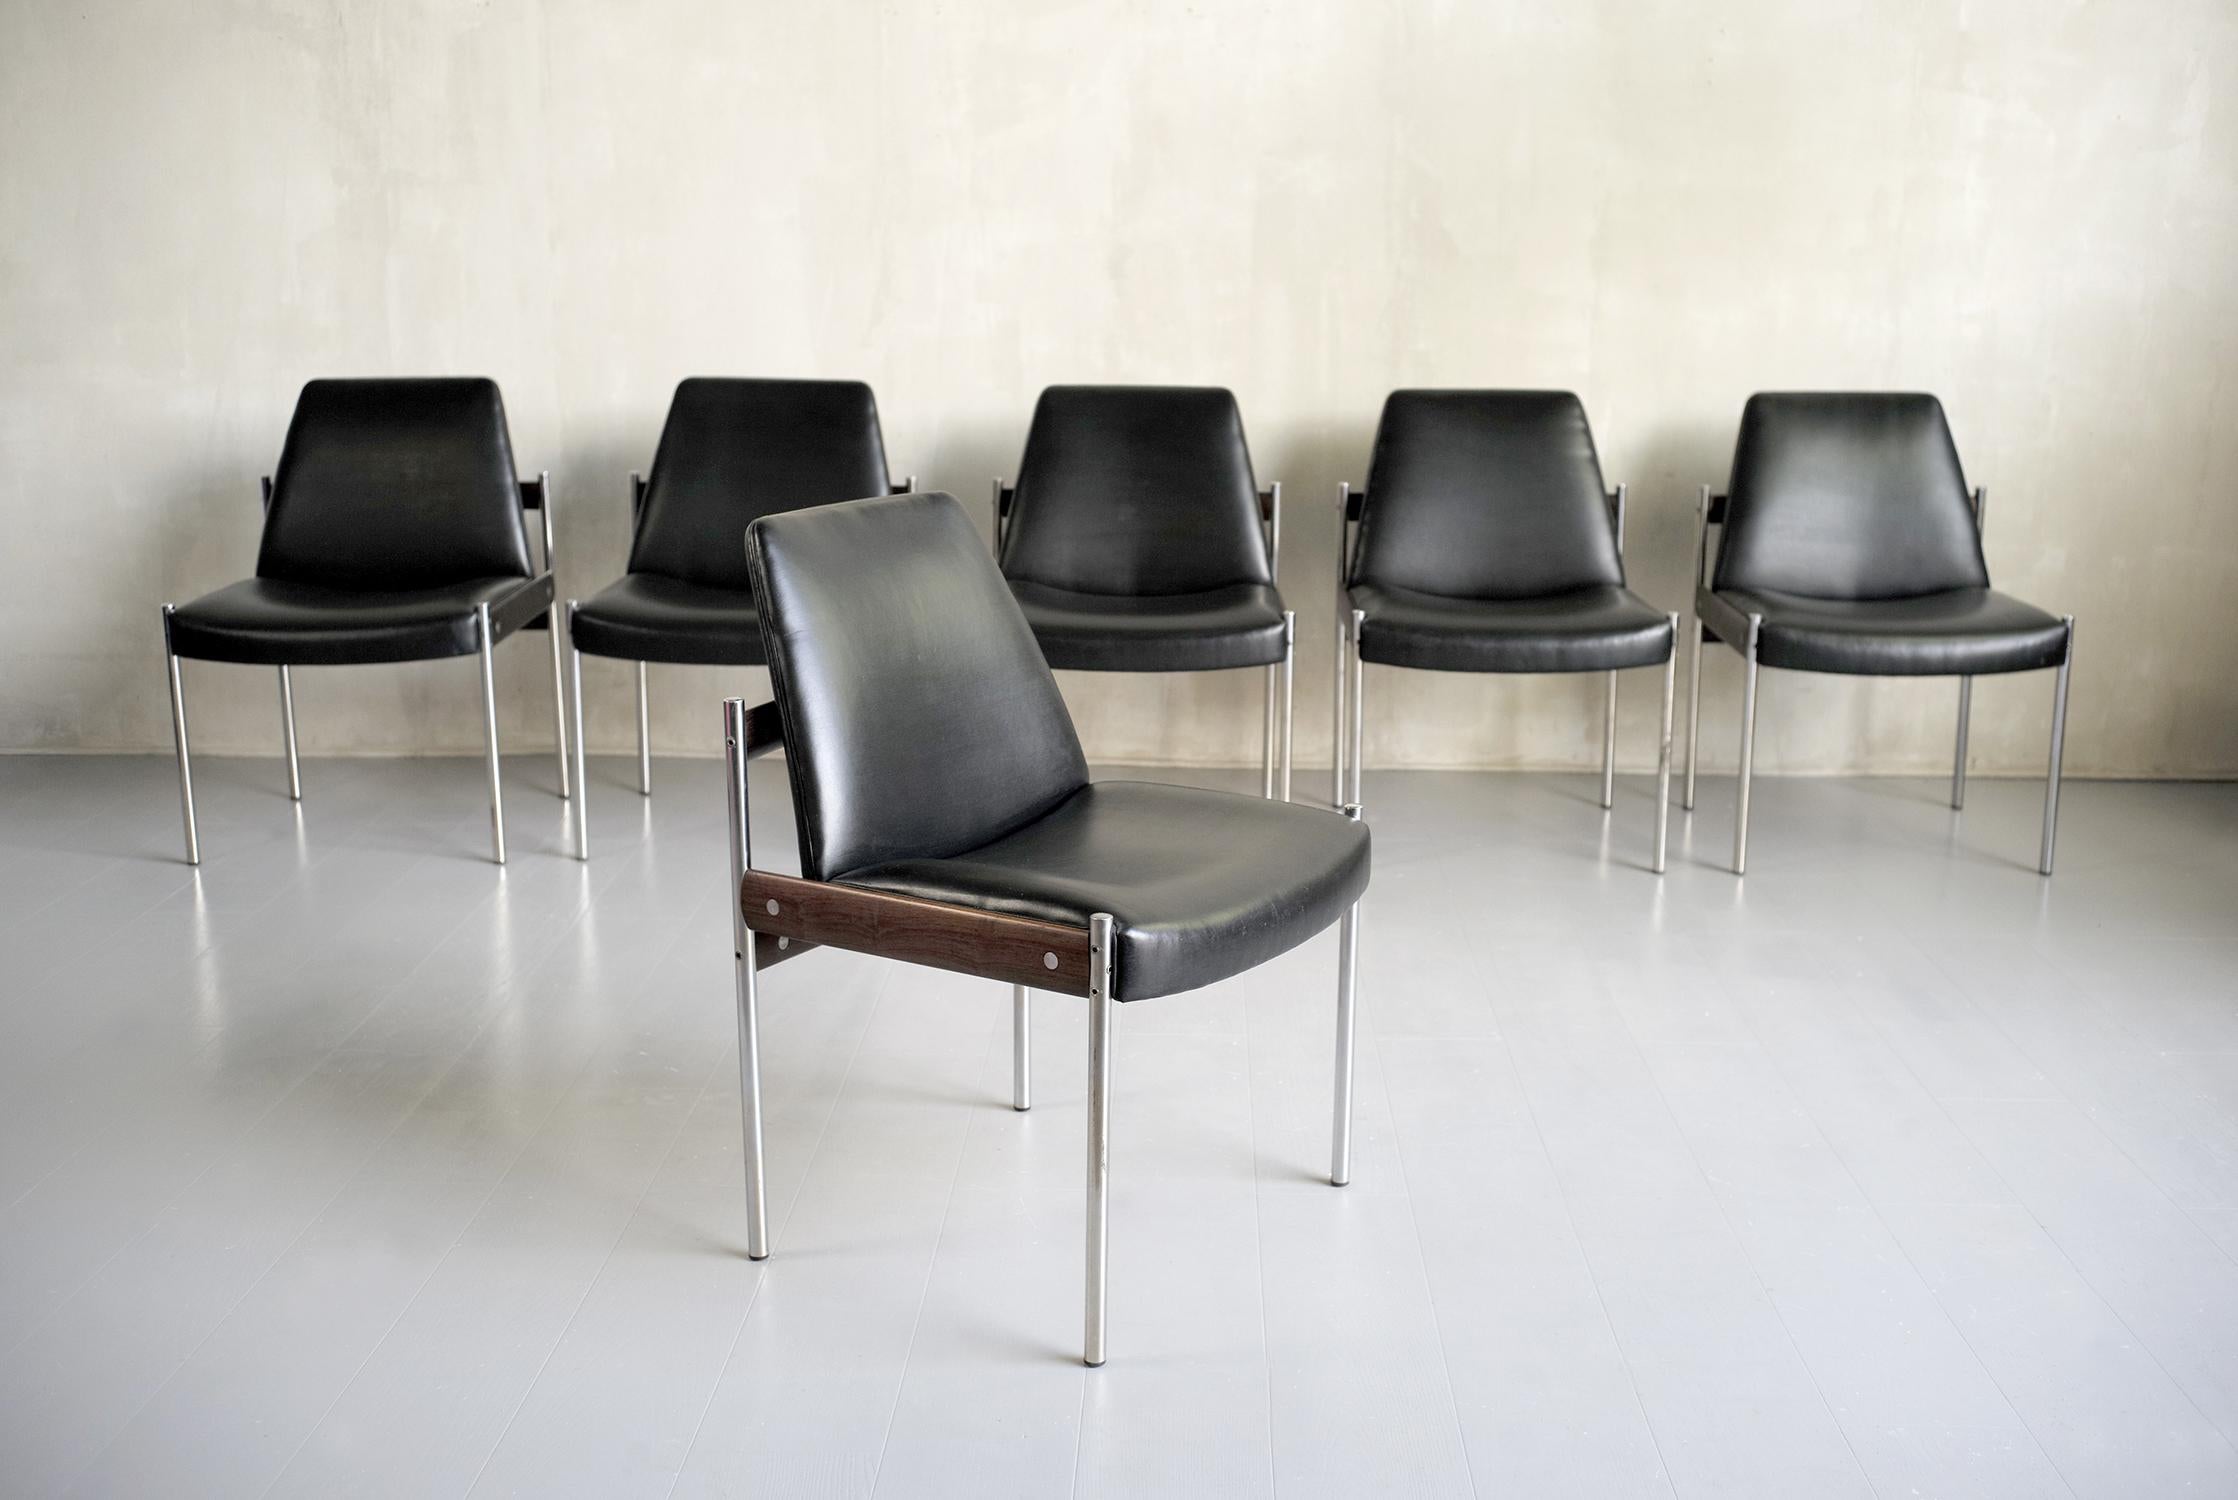 Serie von 6 Stühlen aus schwarzem Leder und Palisanderholz von Sven Ivar Dysthe für Dokka Mobler, Norwegen 1960. Diese Stühle, die unter der Nummer 3001 geführt werden, wurden 1961 mit dem Internationalen Designpreis ausgezeichnet. (Archivdokument,